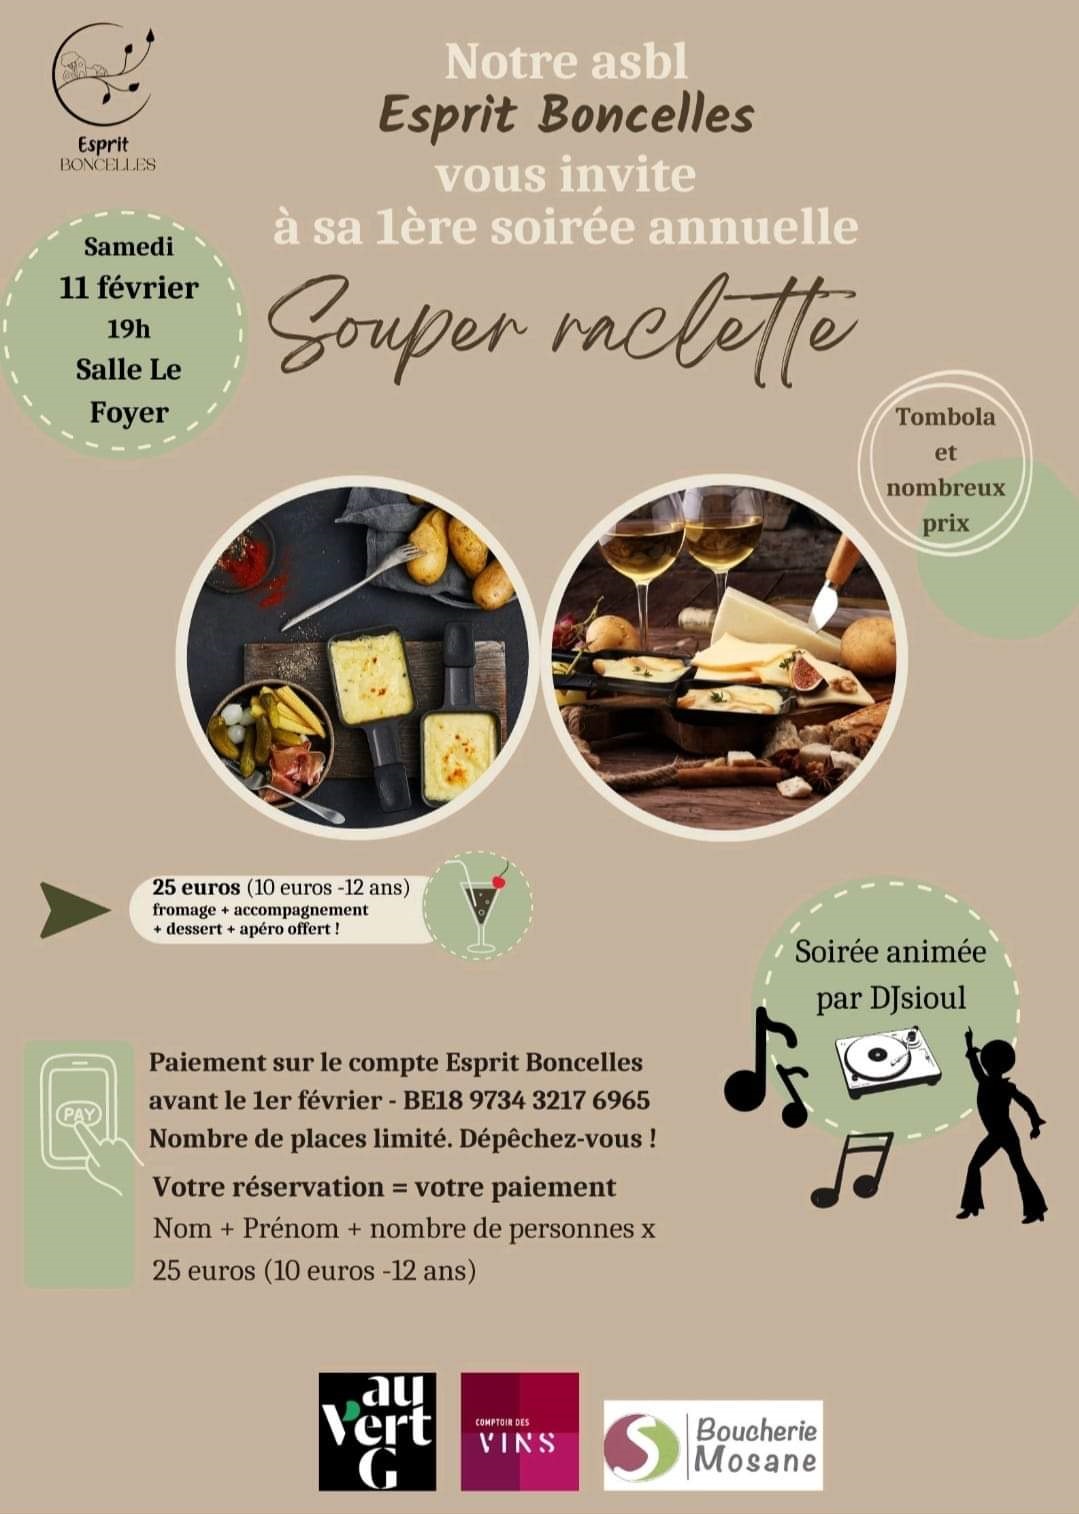 Esprit Boncelles - raclette